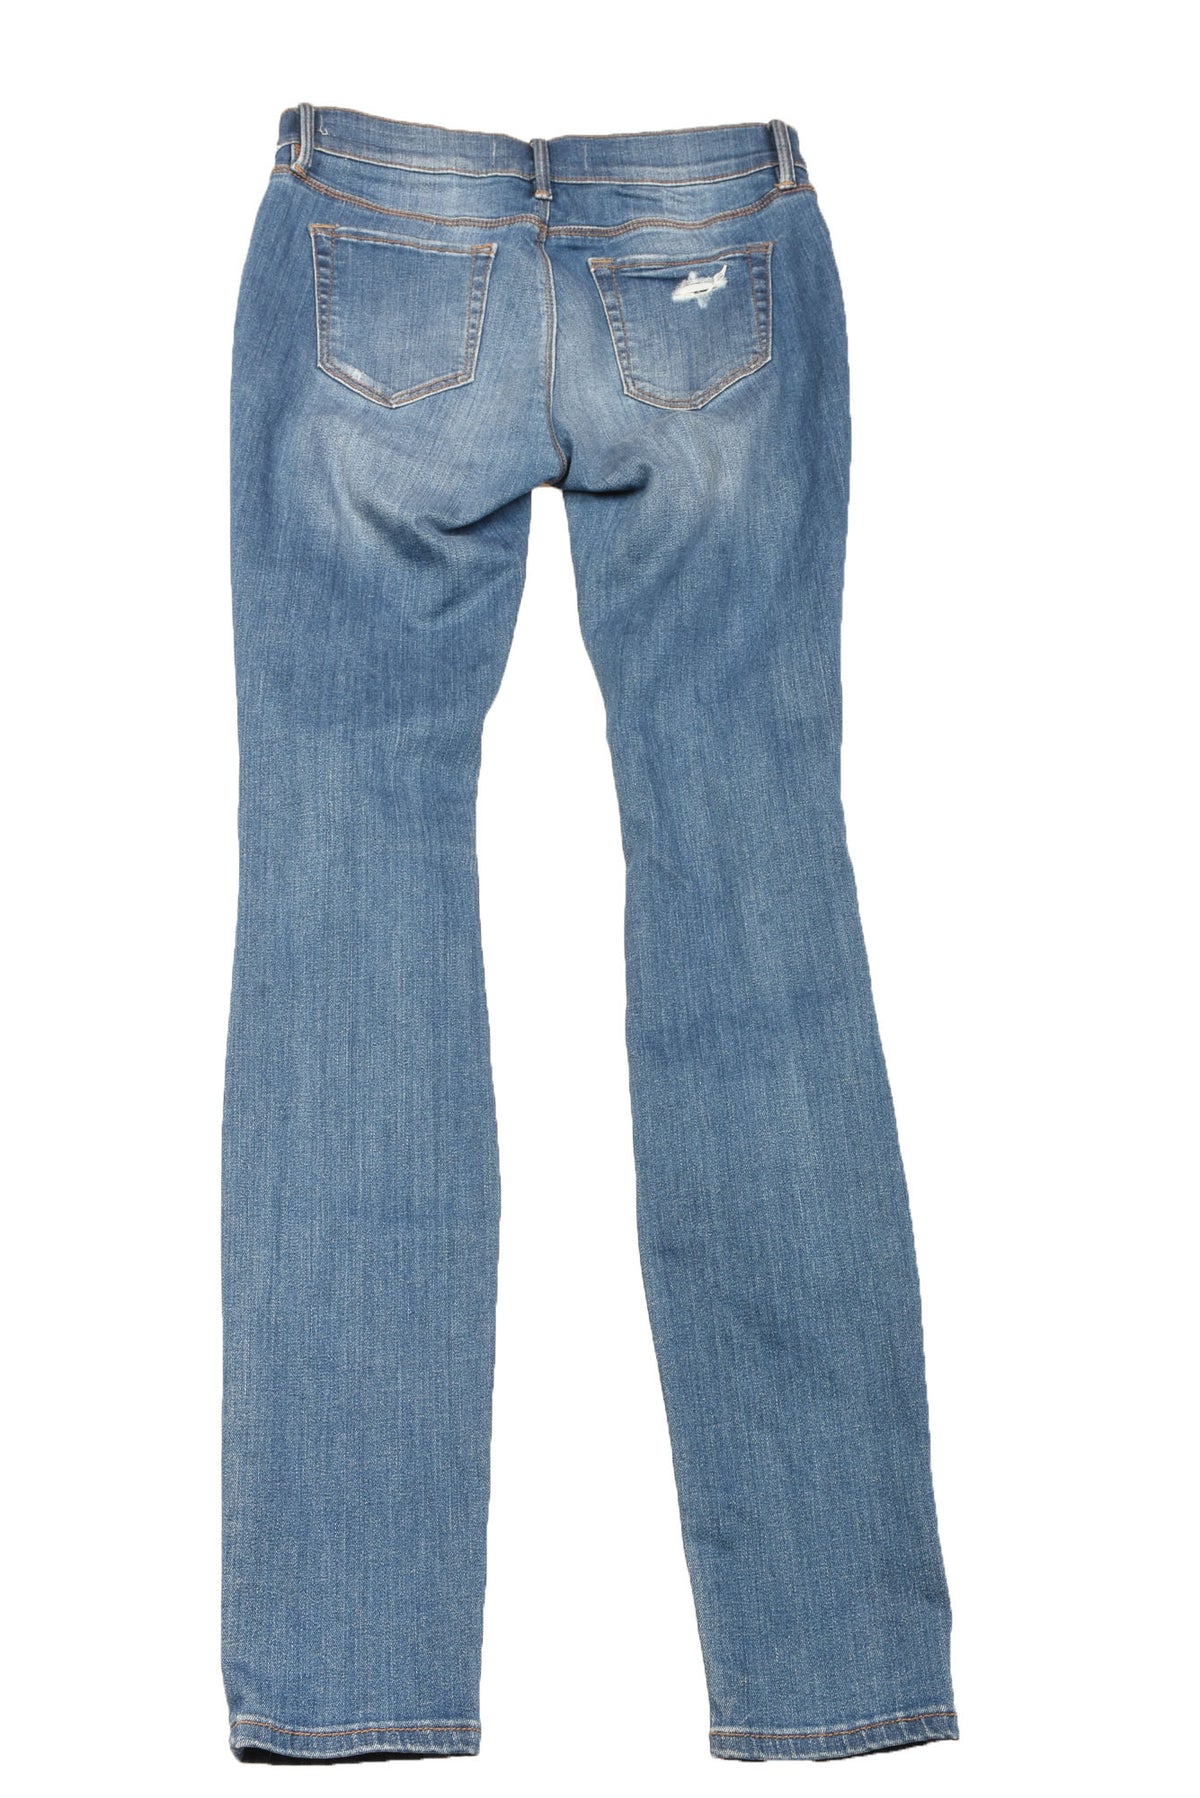 Pacsun Size 25 Long Women&#39;s Jeans